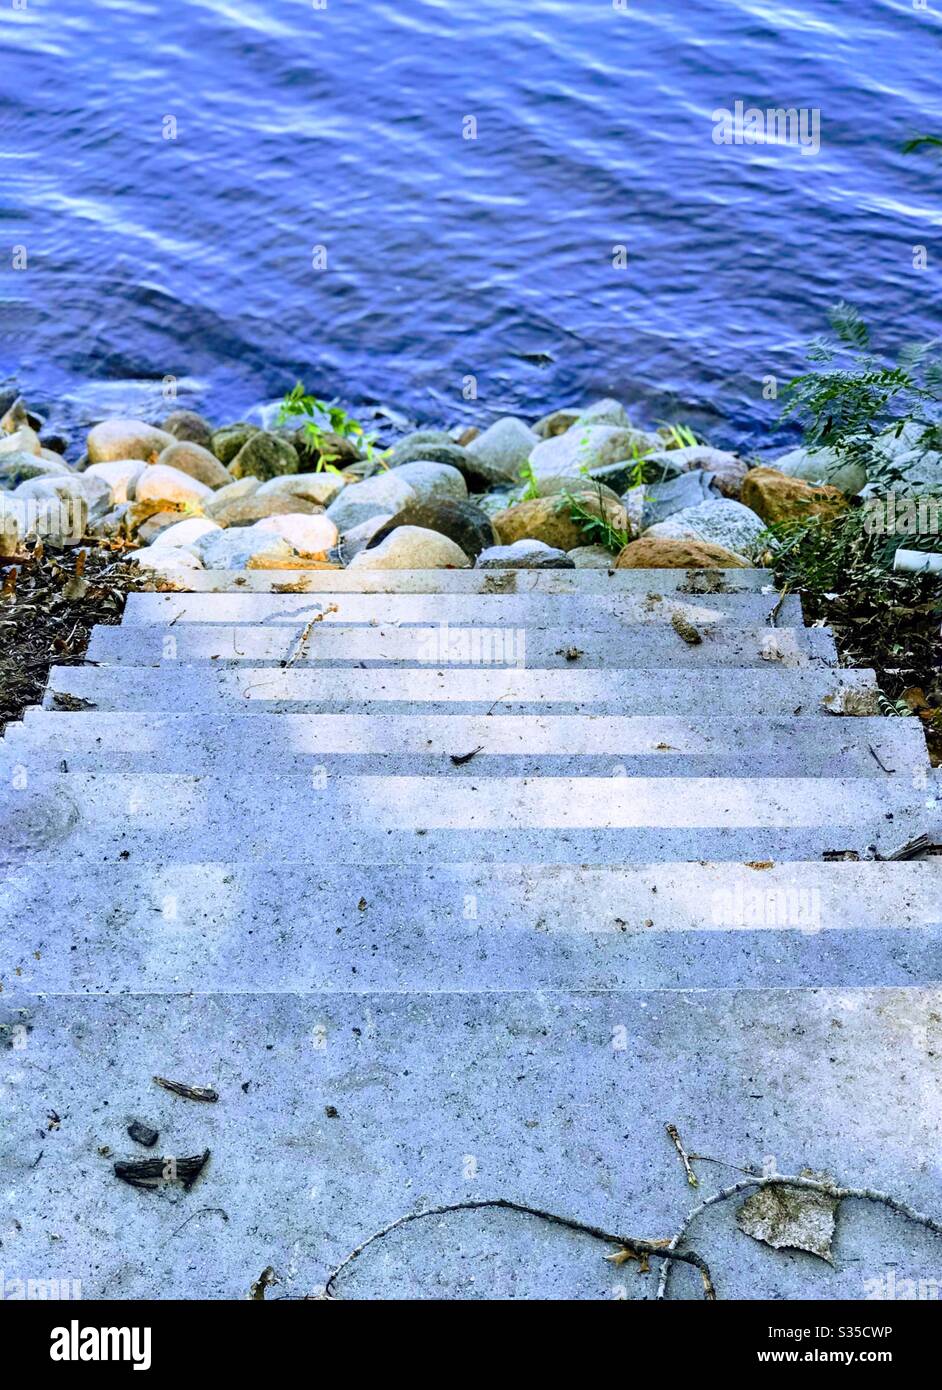 Escaleras que bajan a un lago Foto de stock